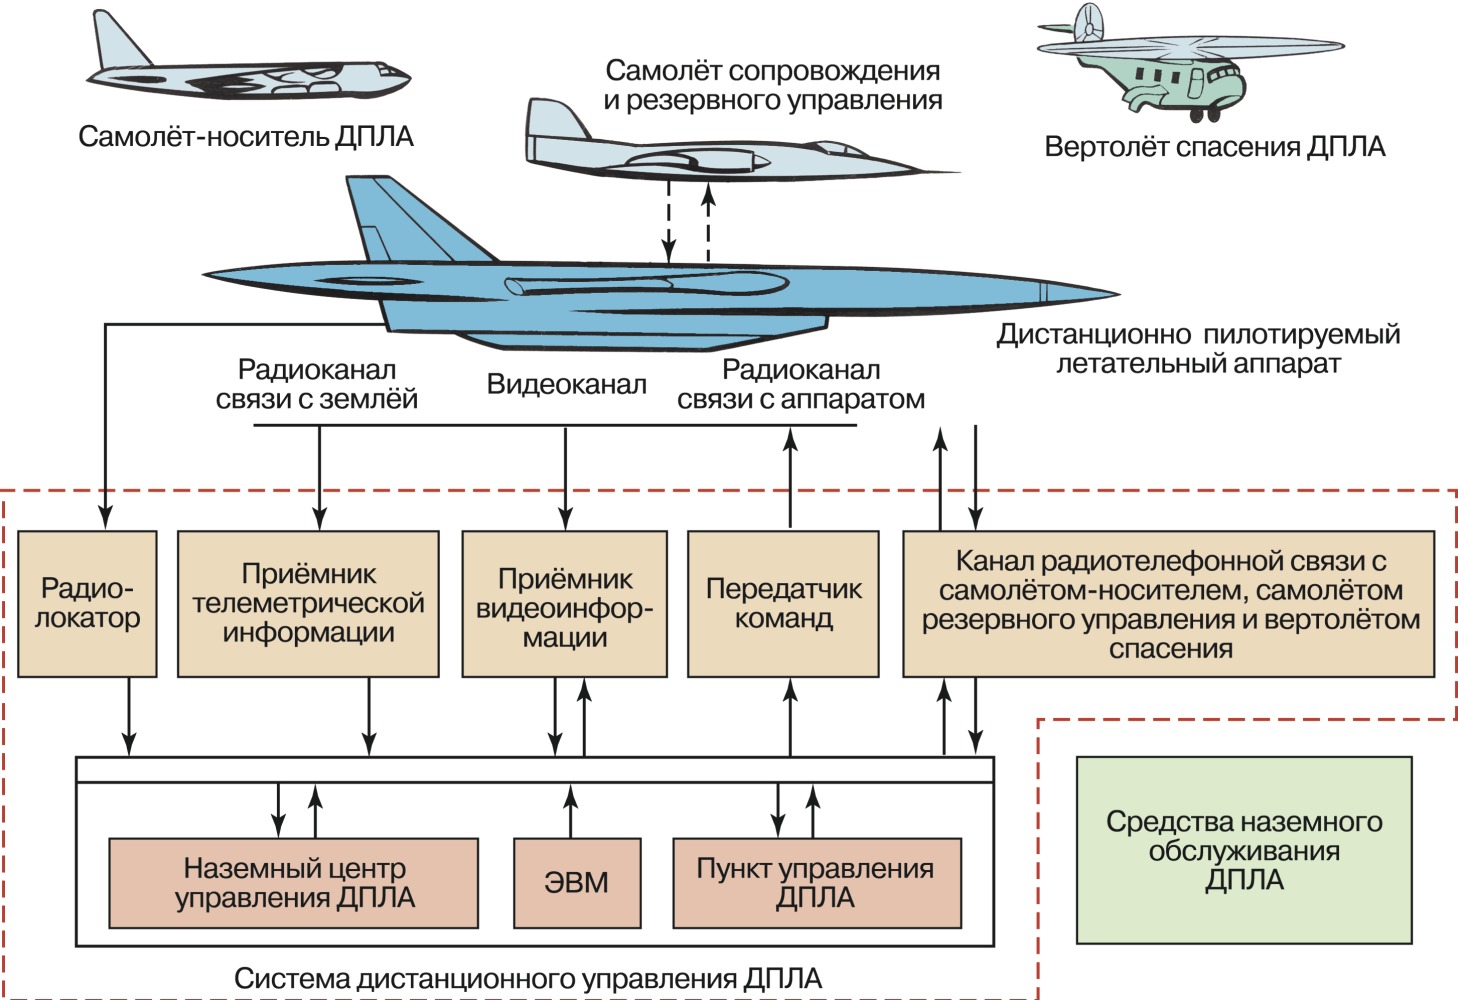 Что такое опасность бпла. Классификация БПЛА самолетного типа. Структура БПЛА самолетного типа. Структурная схема БПЛА самолетного типа. Система электроснабжения БПЛА.